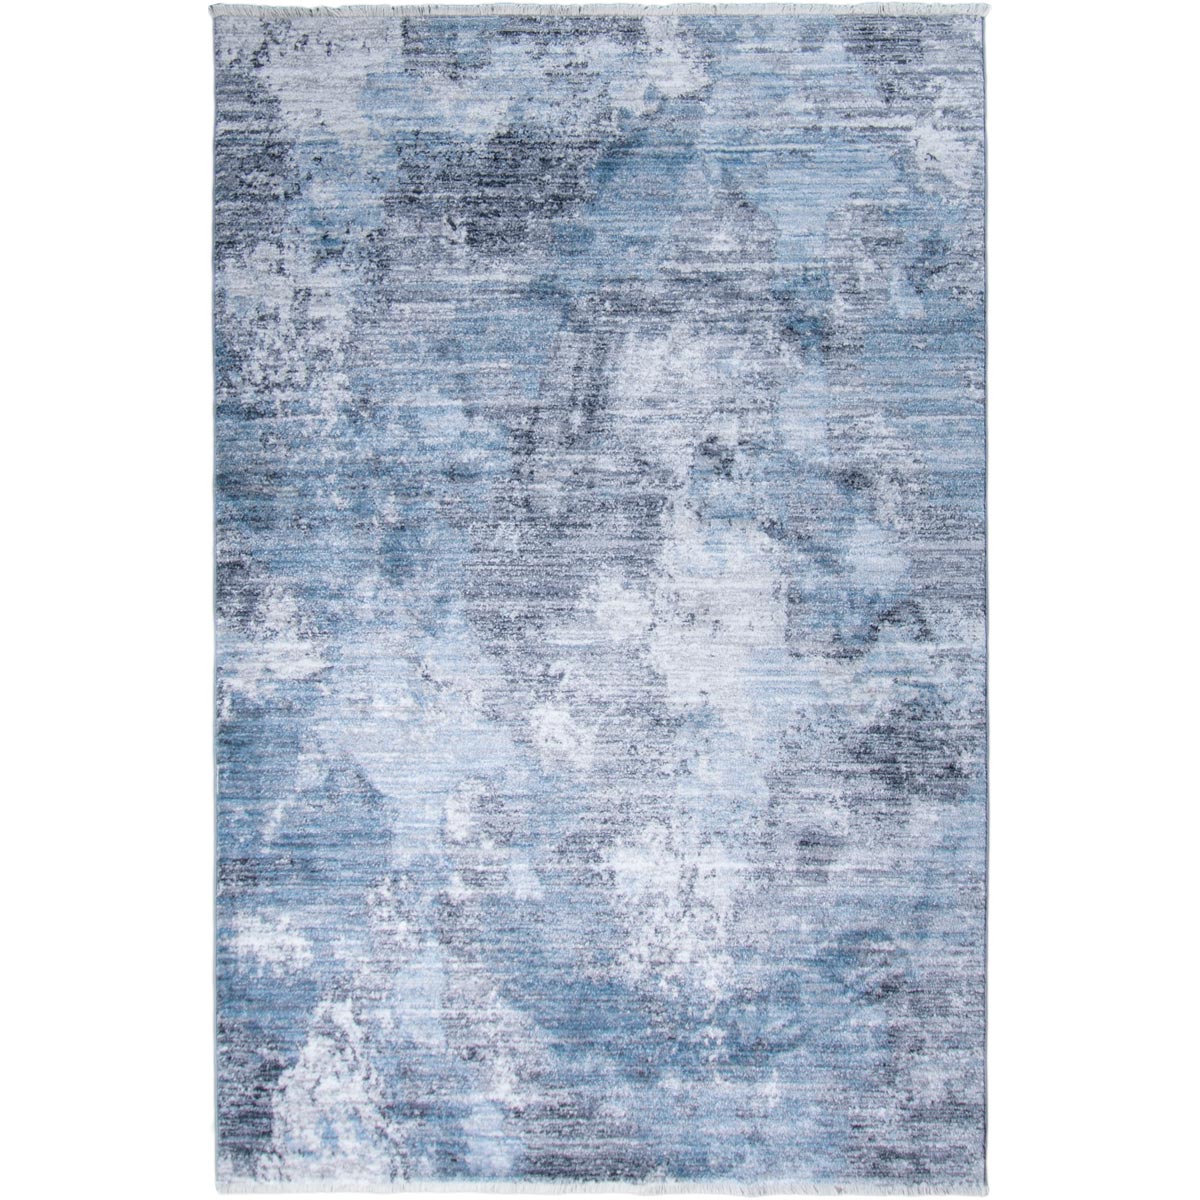 שטיח איסטנבול 06 כחול כהה/אפור כהה עם פרנזים | השטיח האדום